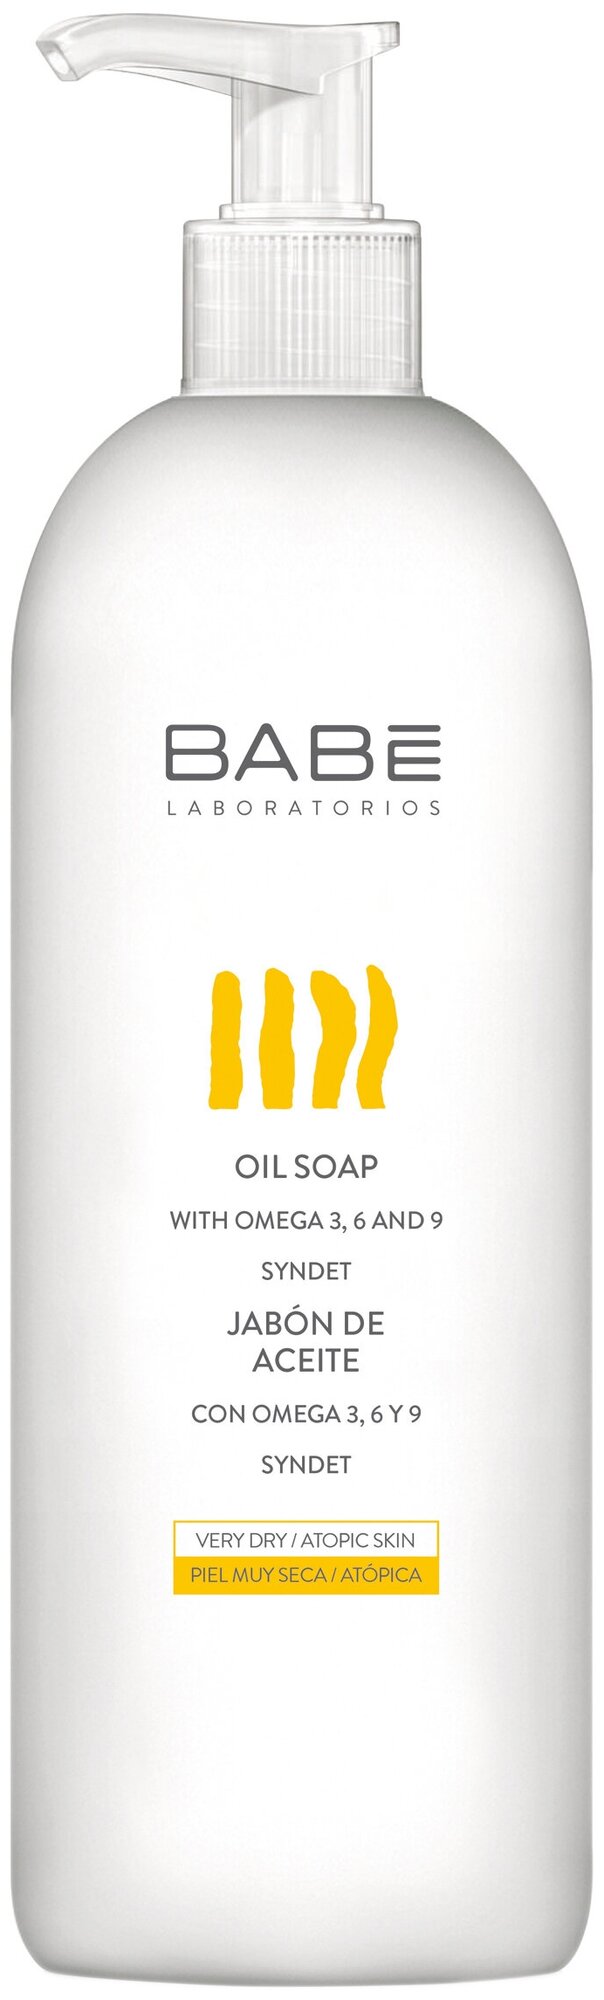 BABE Laboratorios Мыло жидкое масляное для сухой и атопической кожи, 500 мл